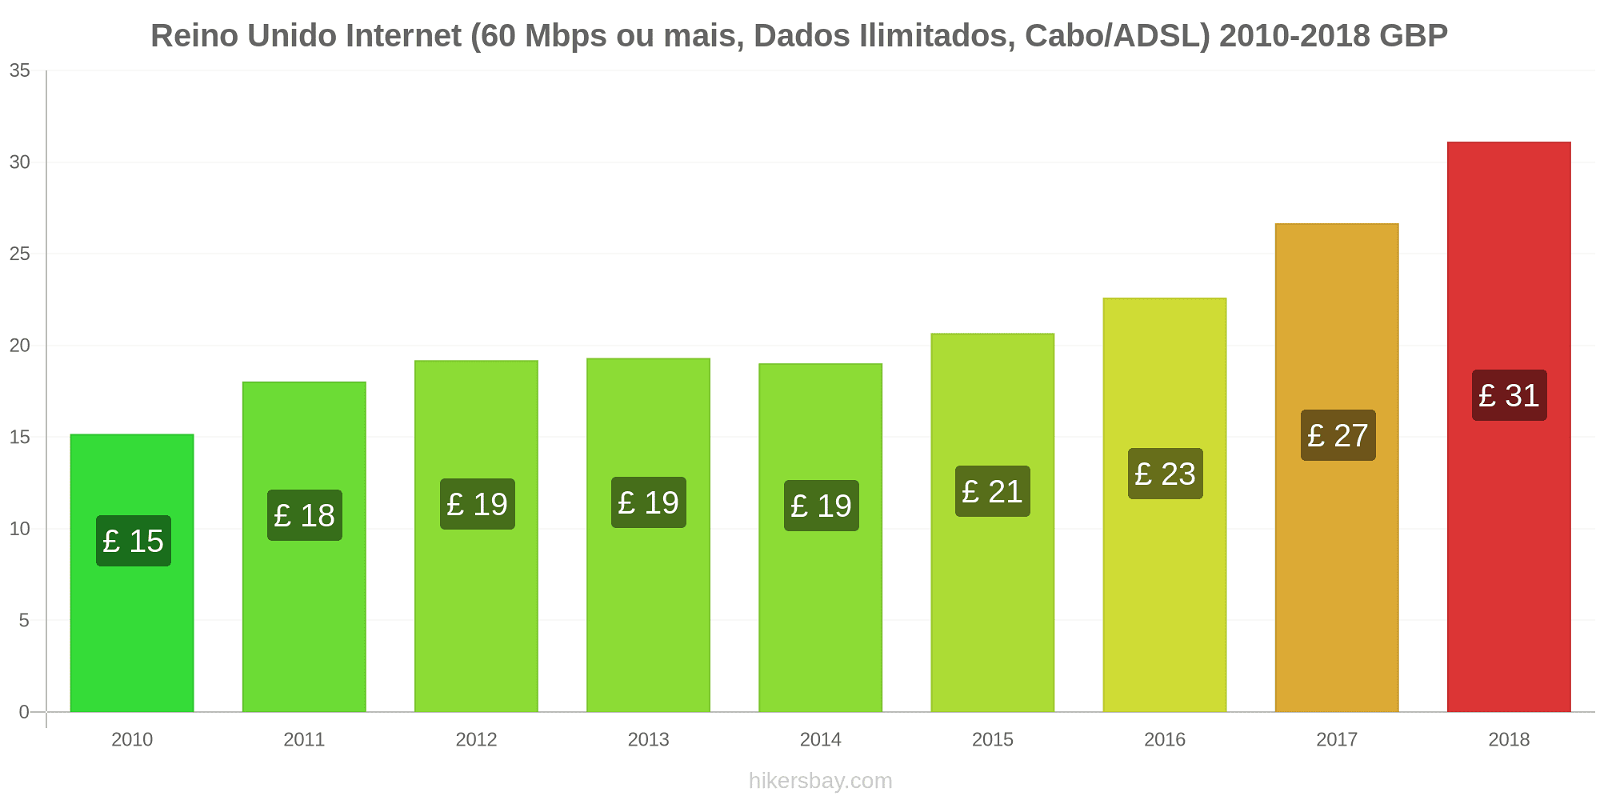 Reino Unido mudanças de preços Internet (60 Mbps ou mais, dados ilimitados, cabo/ADSL) hikersbay.com